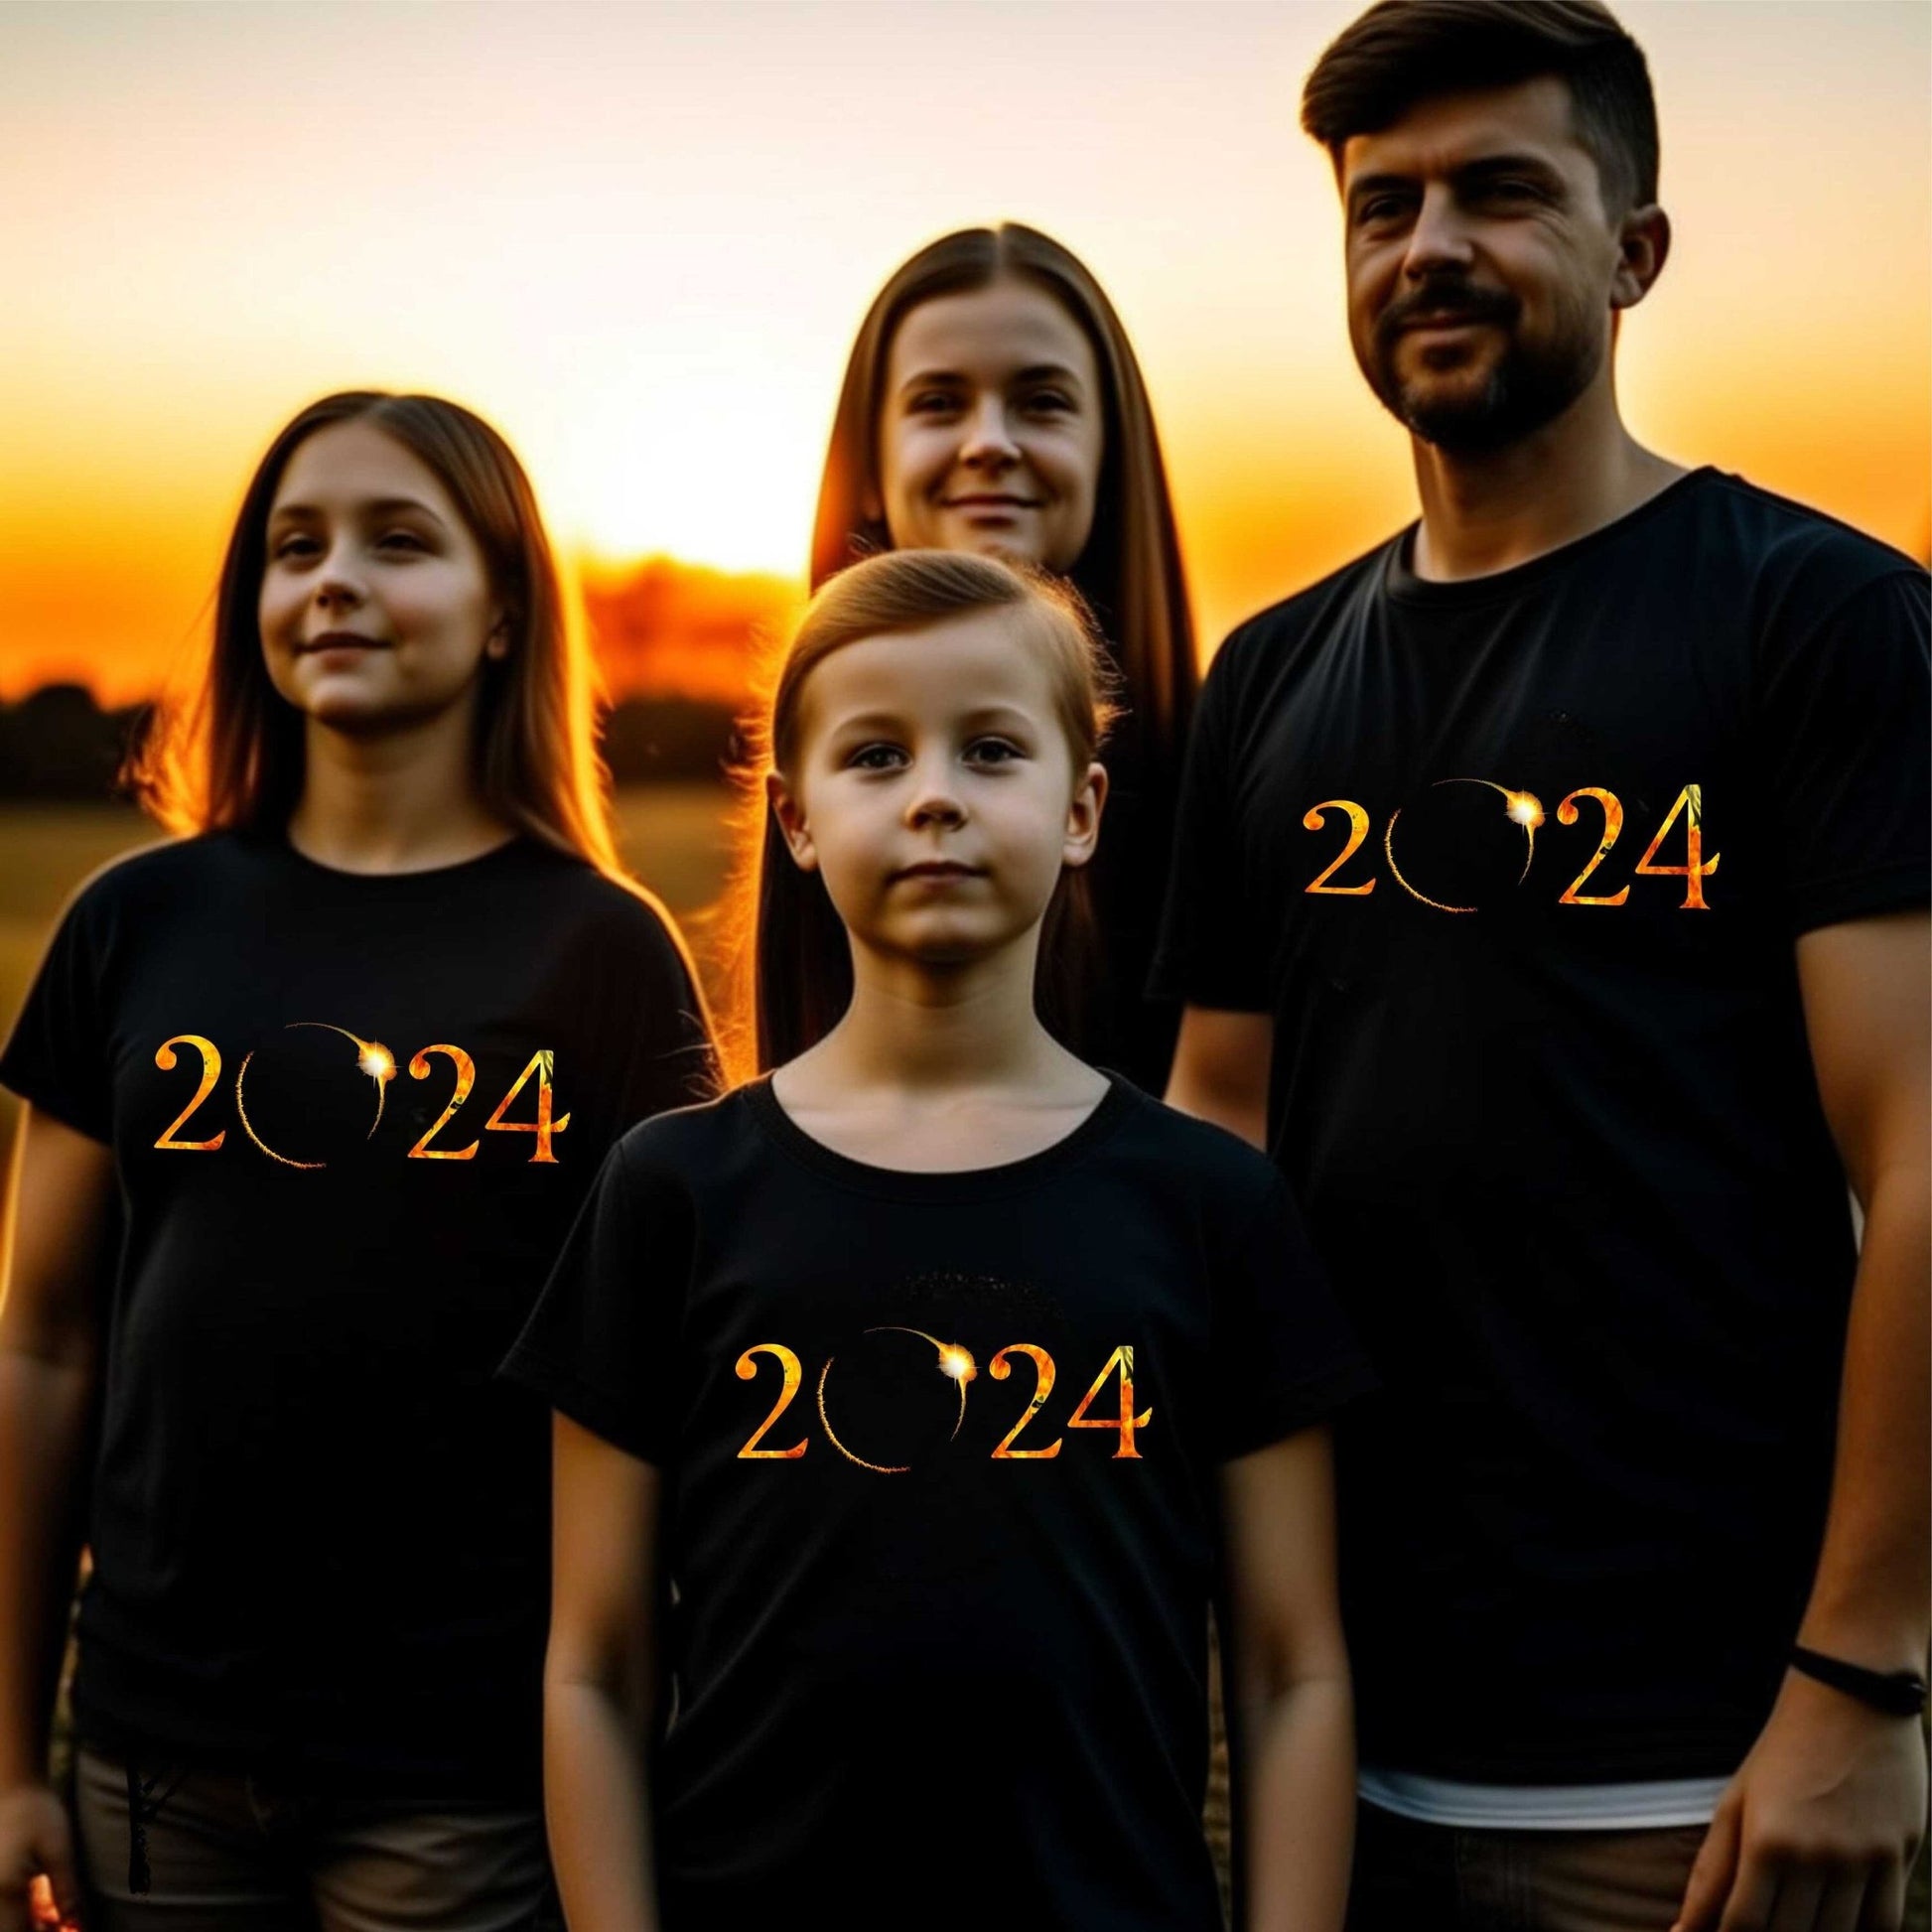 Solar Eclipse 2024 Black T Shirt - Unique Astronomical Design for Men, Women, and Kids - SBS T Shop